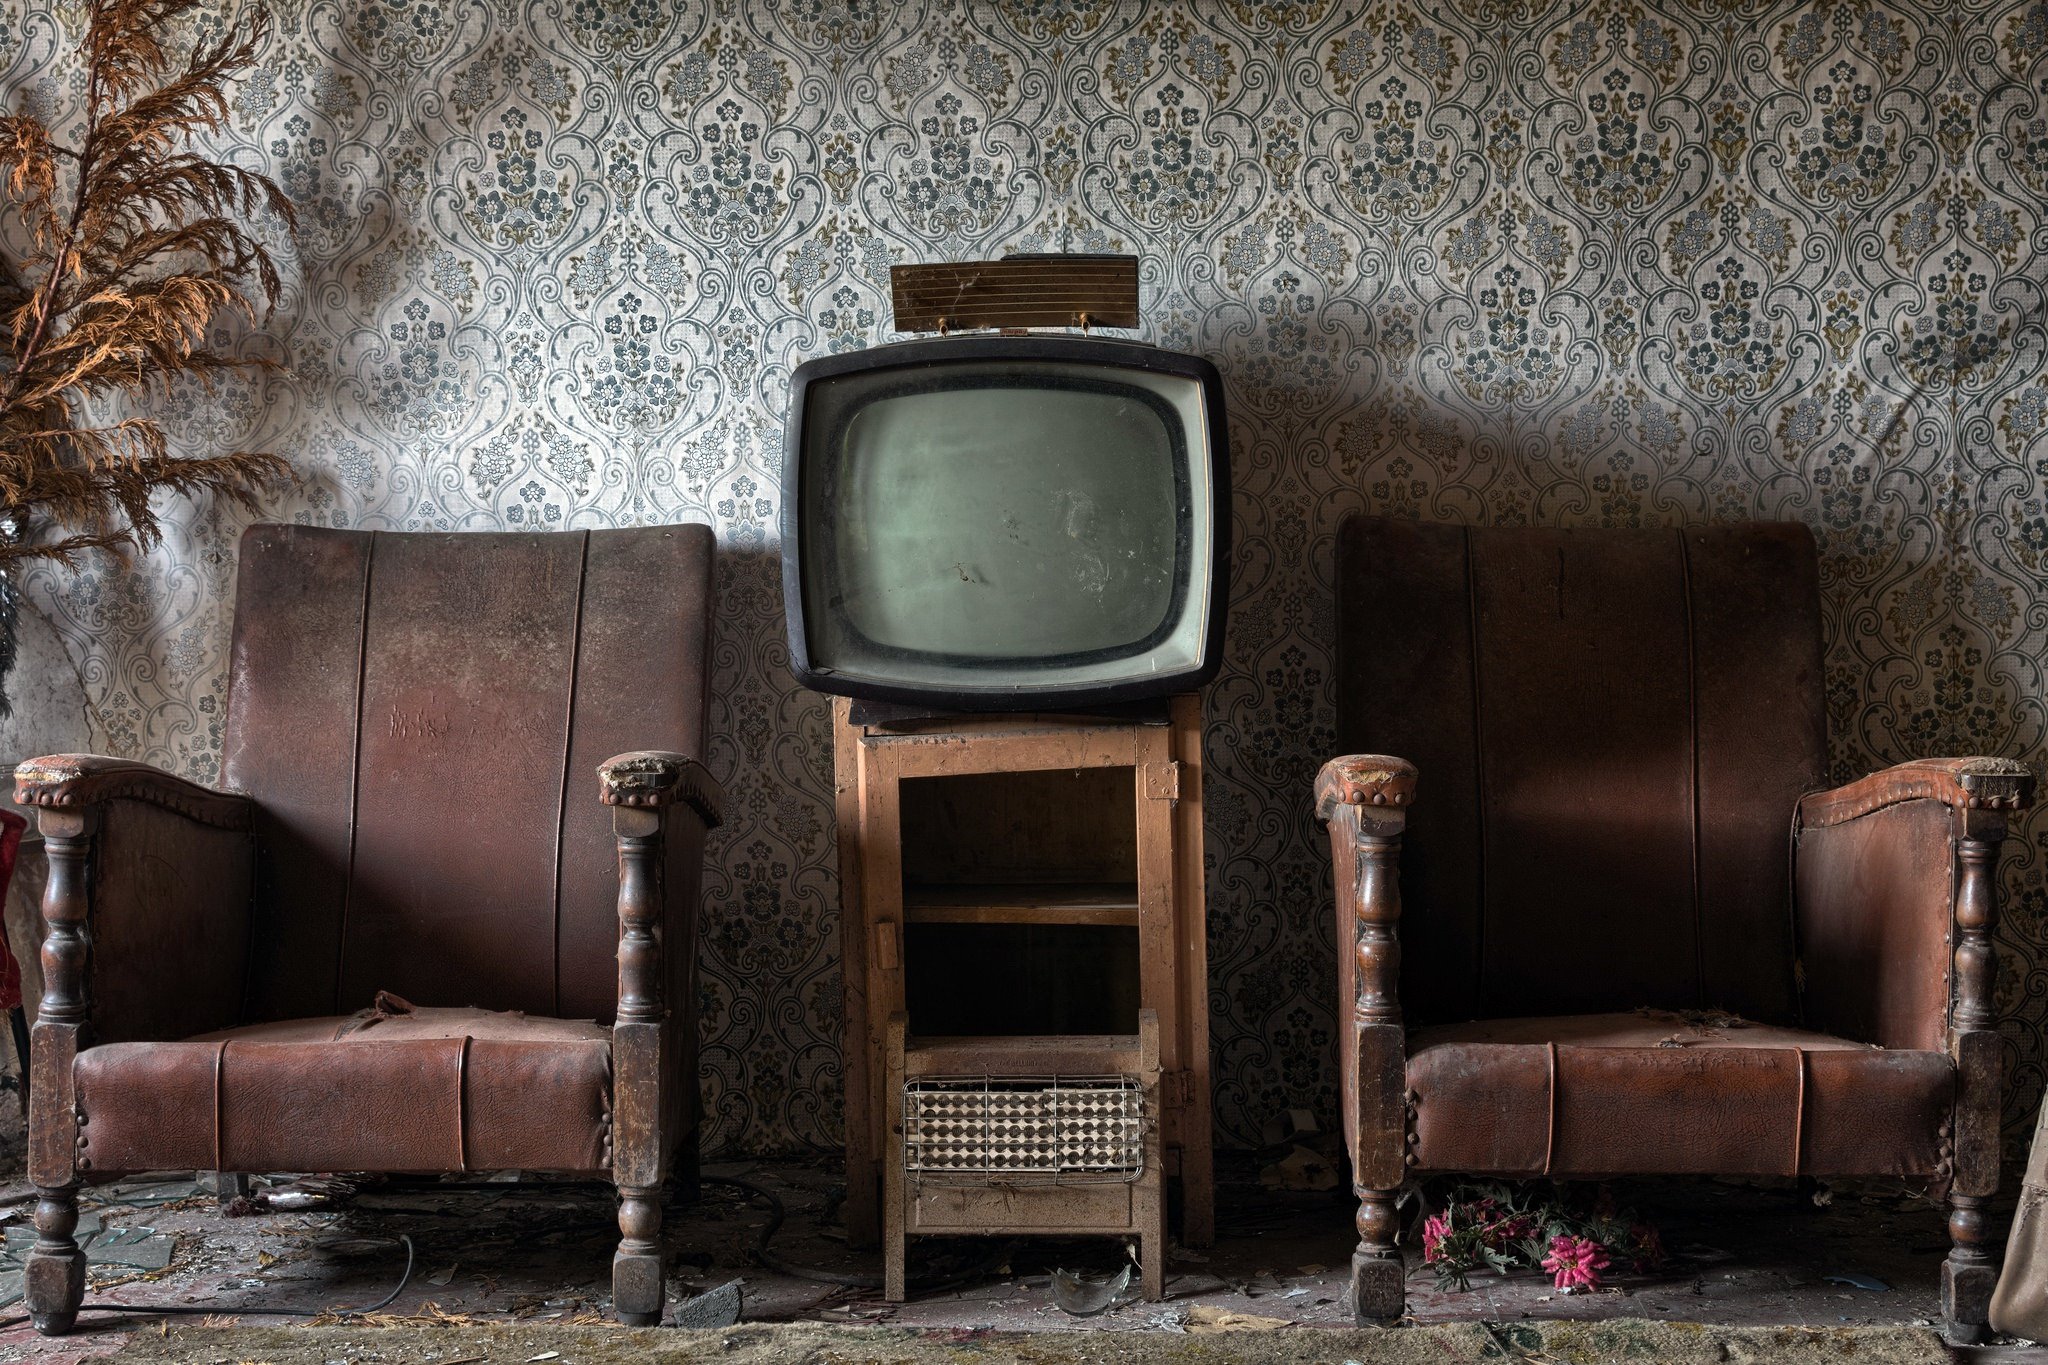 Старые обои в квартире. Старый телевизор. Старый телевизор в комнате. Старинный телевизор. Старый телевизор в интерьере.